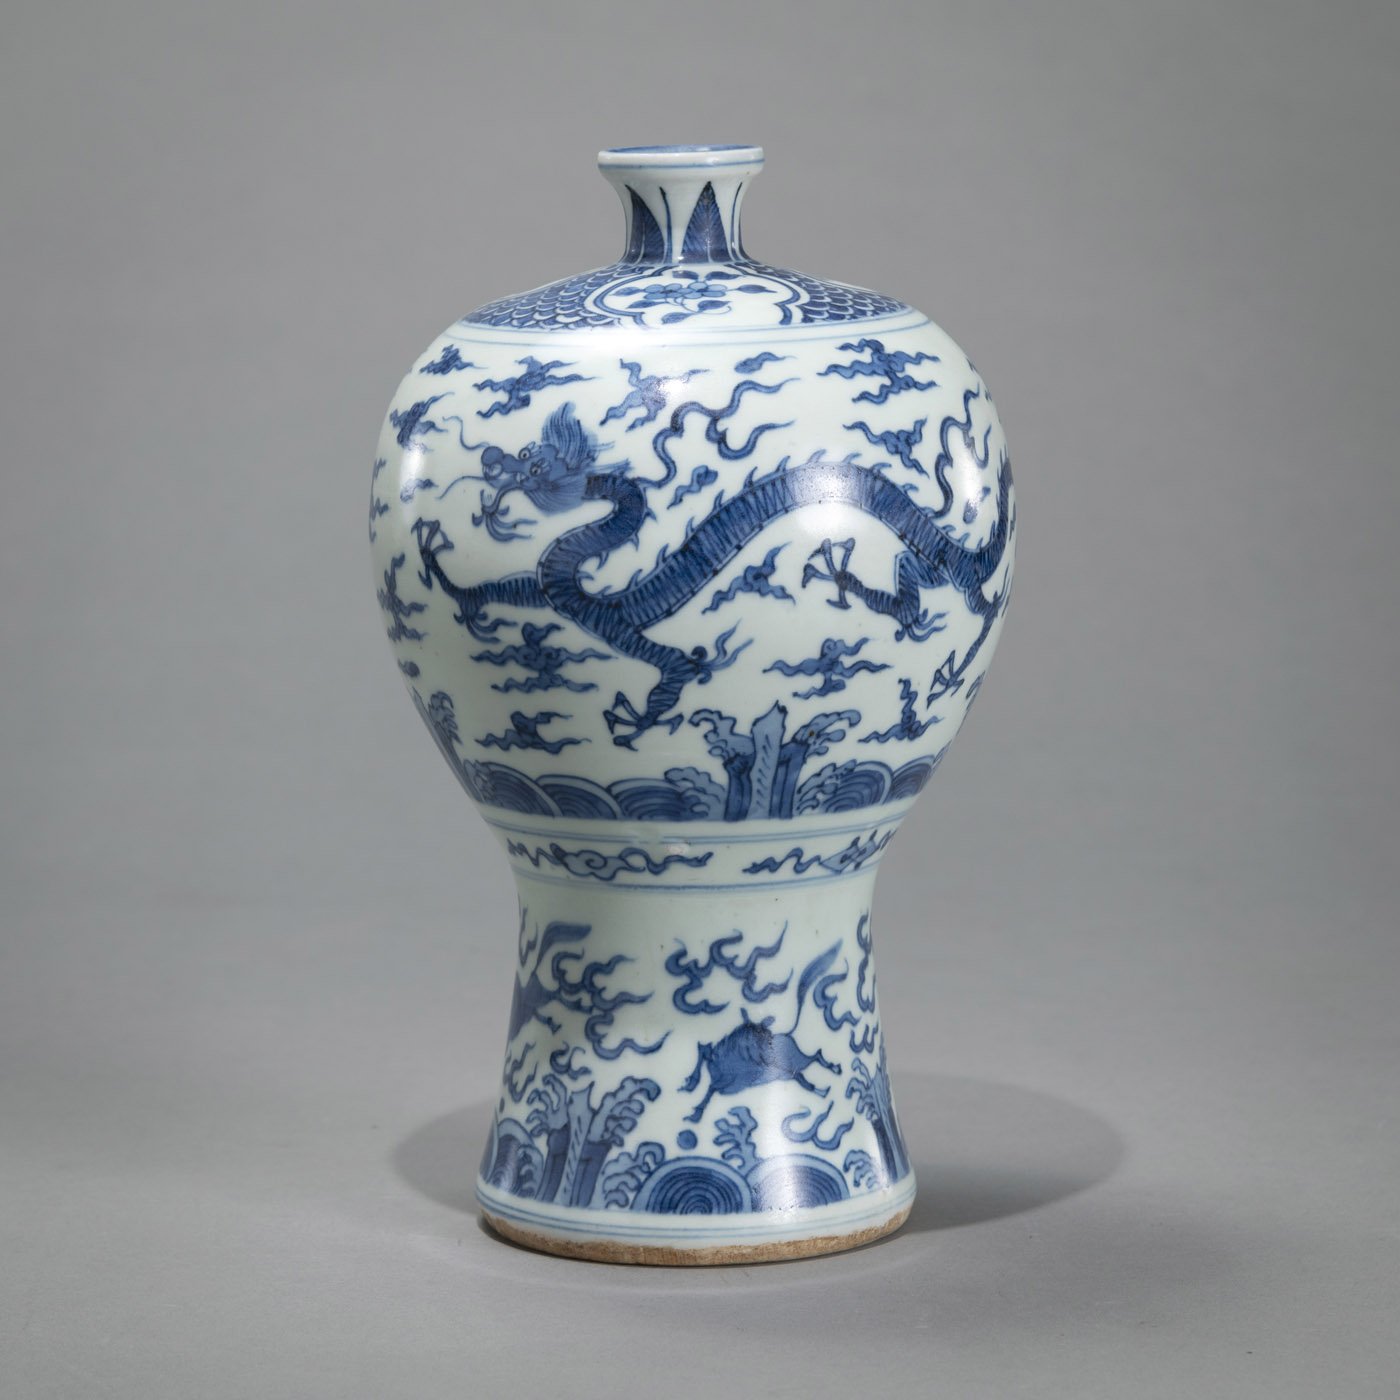 <b>Porzellanvase in 'meiping'-Form mit blau-weißem Dekor eines Drachen und Phönix sowie Pferden</b>